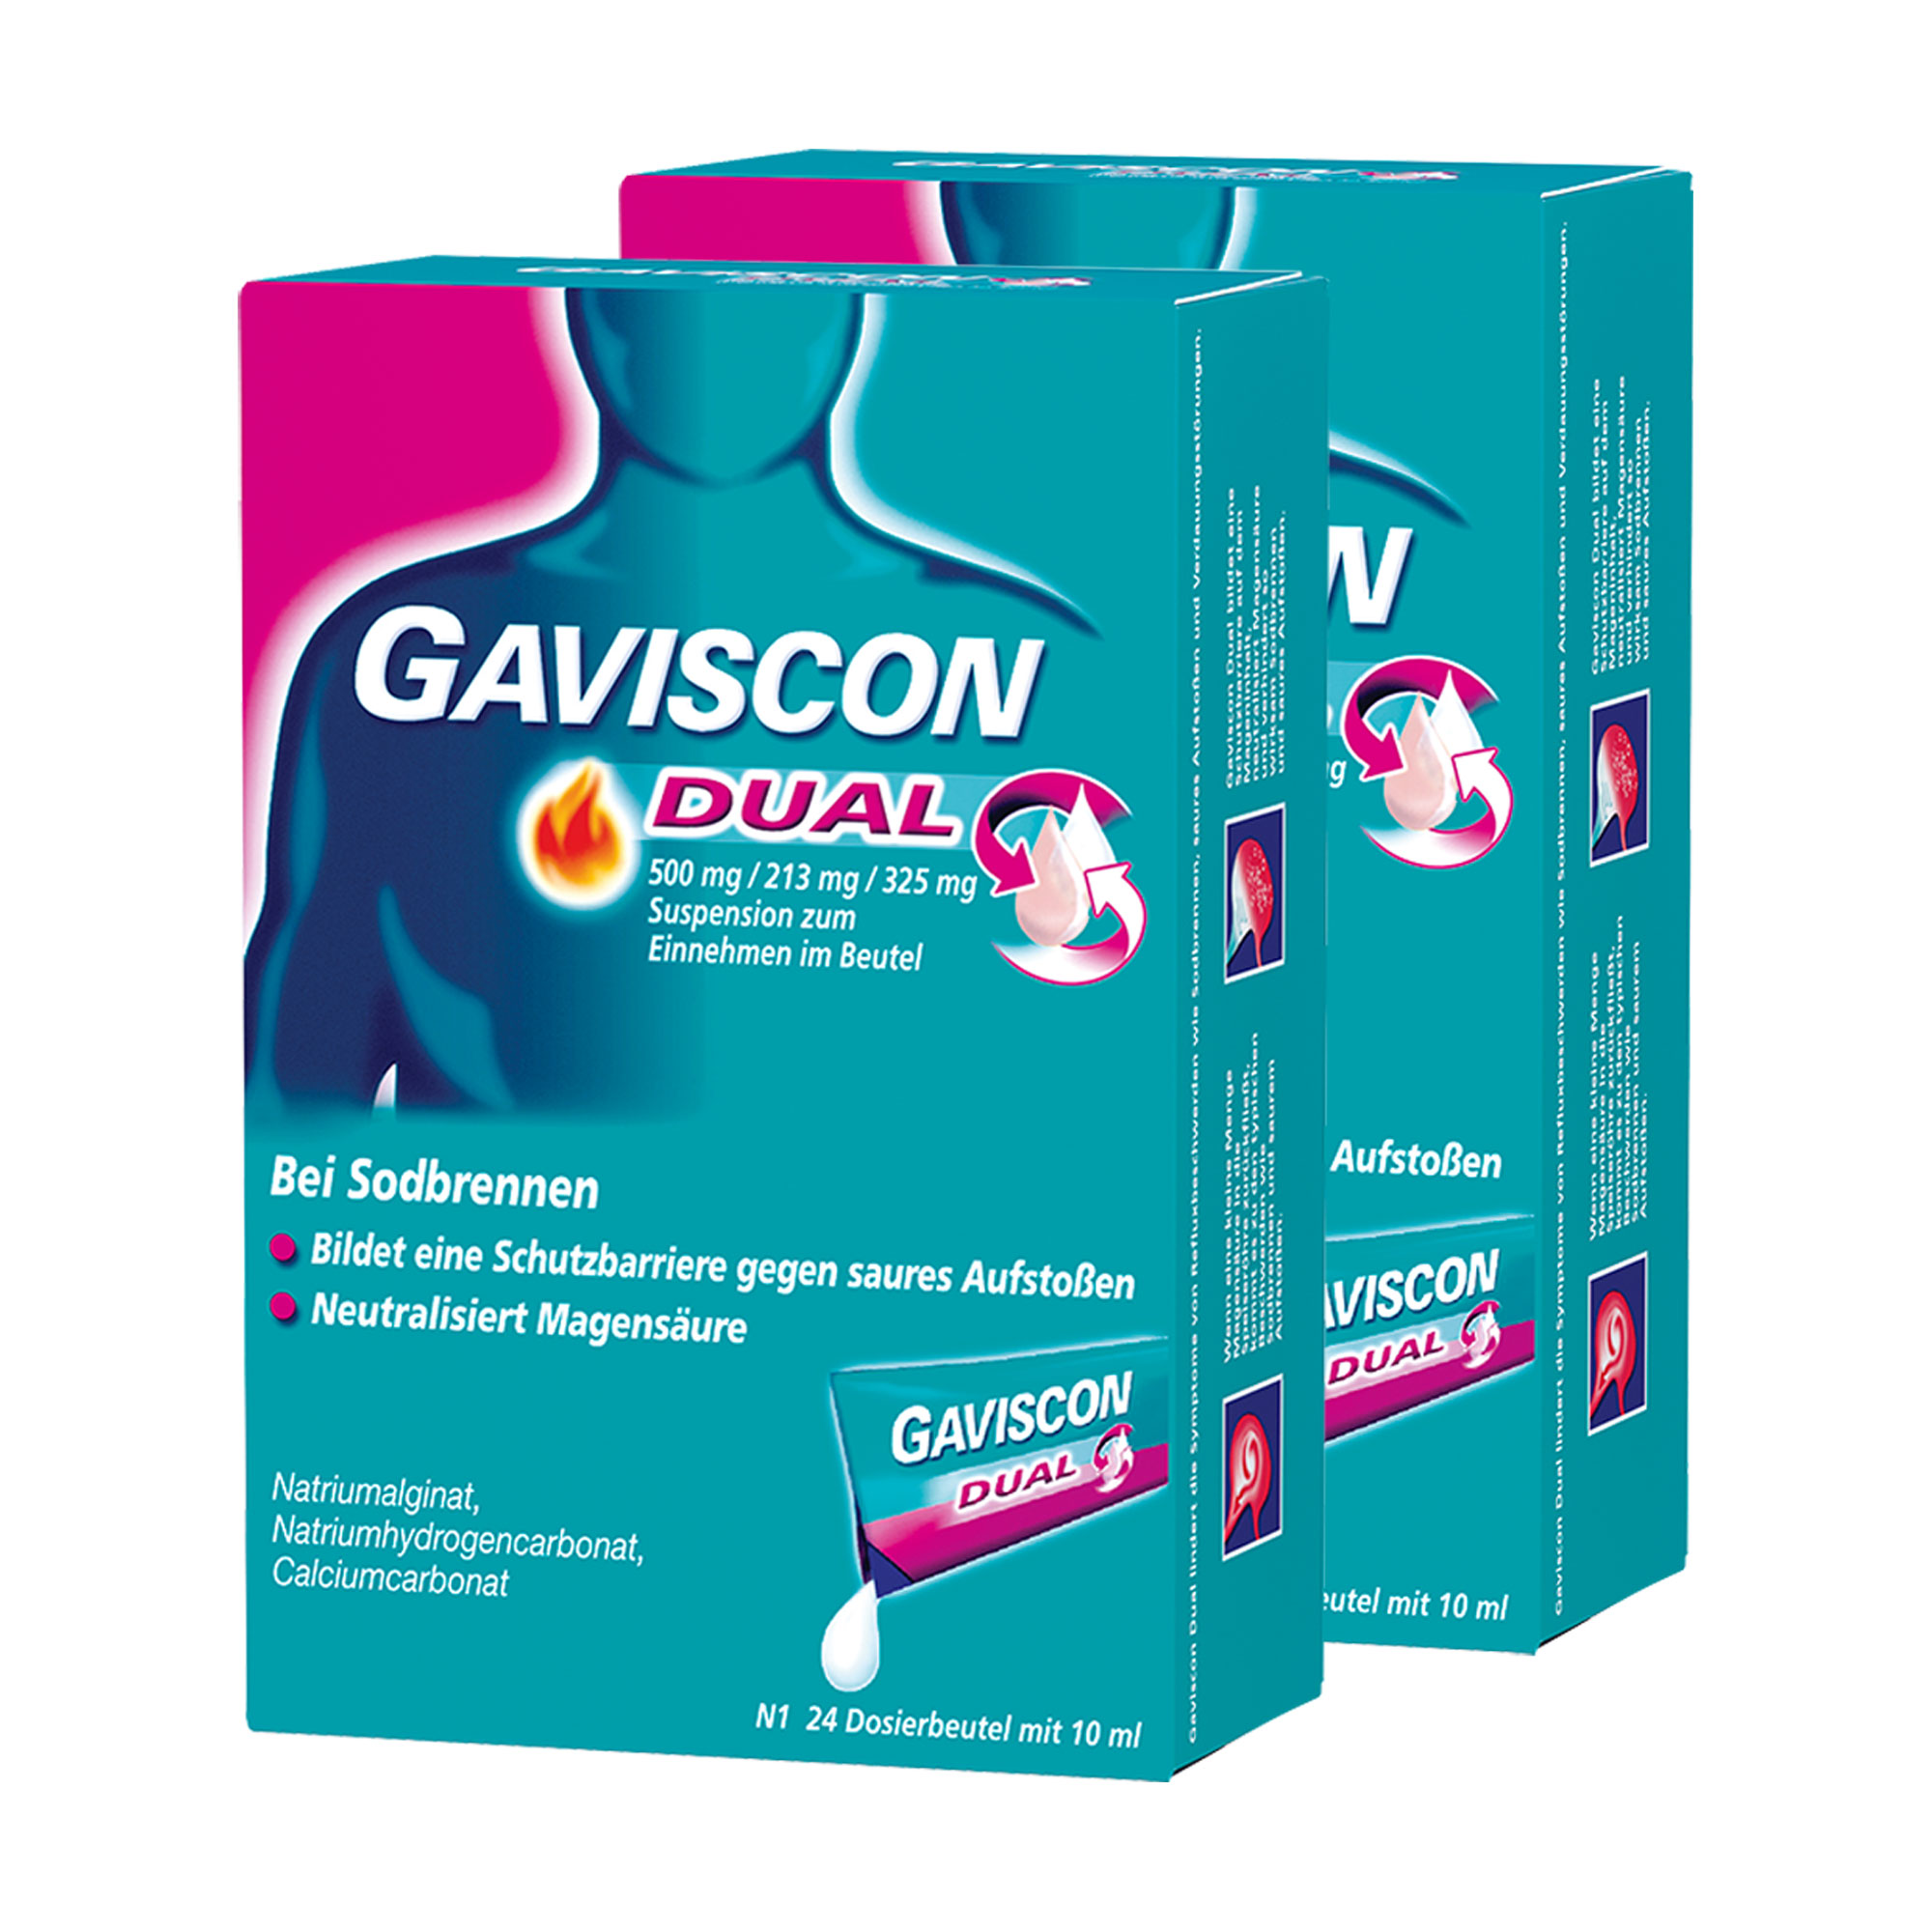 Gaviscon Dual Suspension im Vorteilsset.